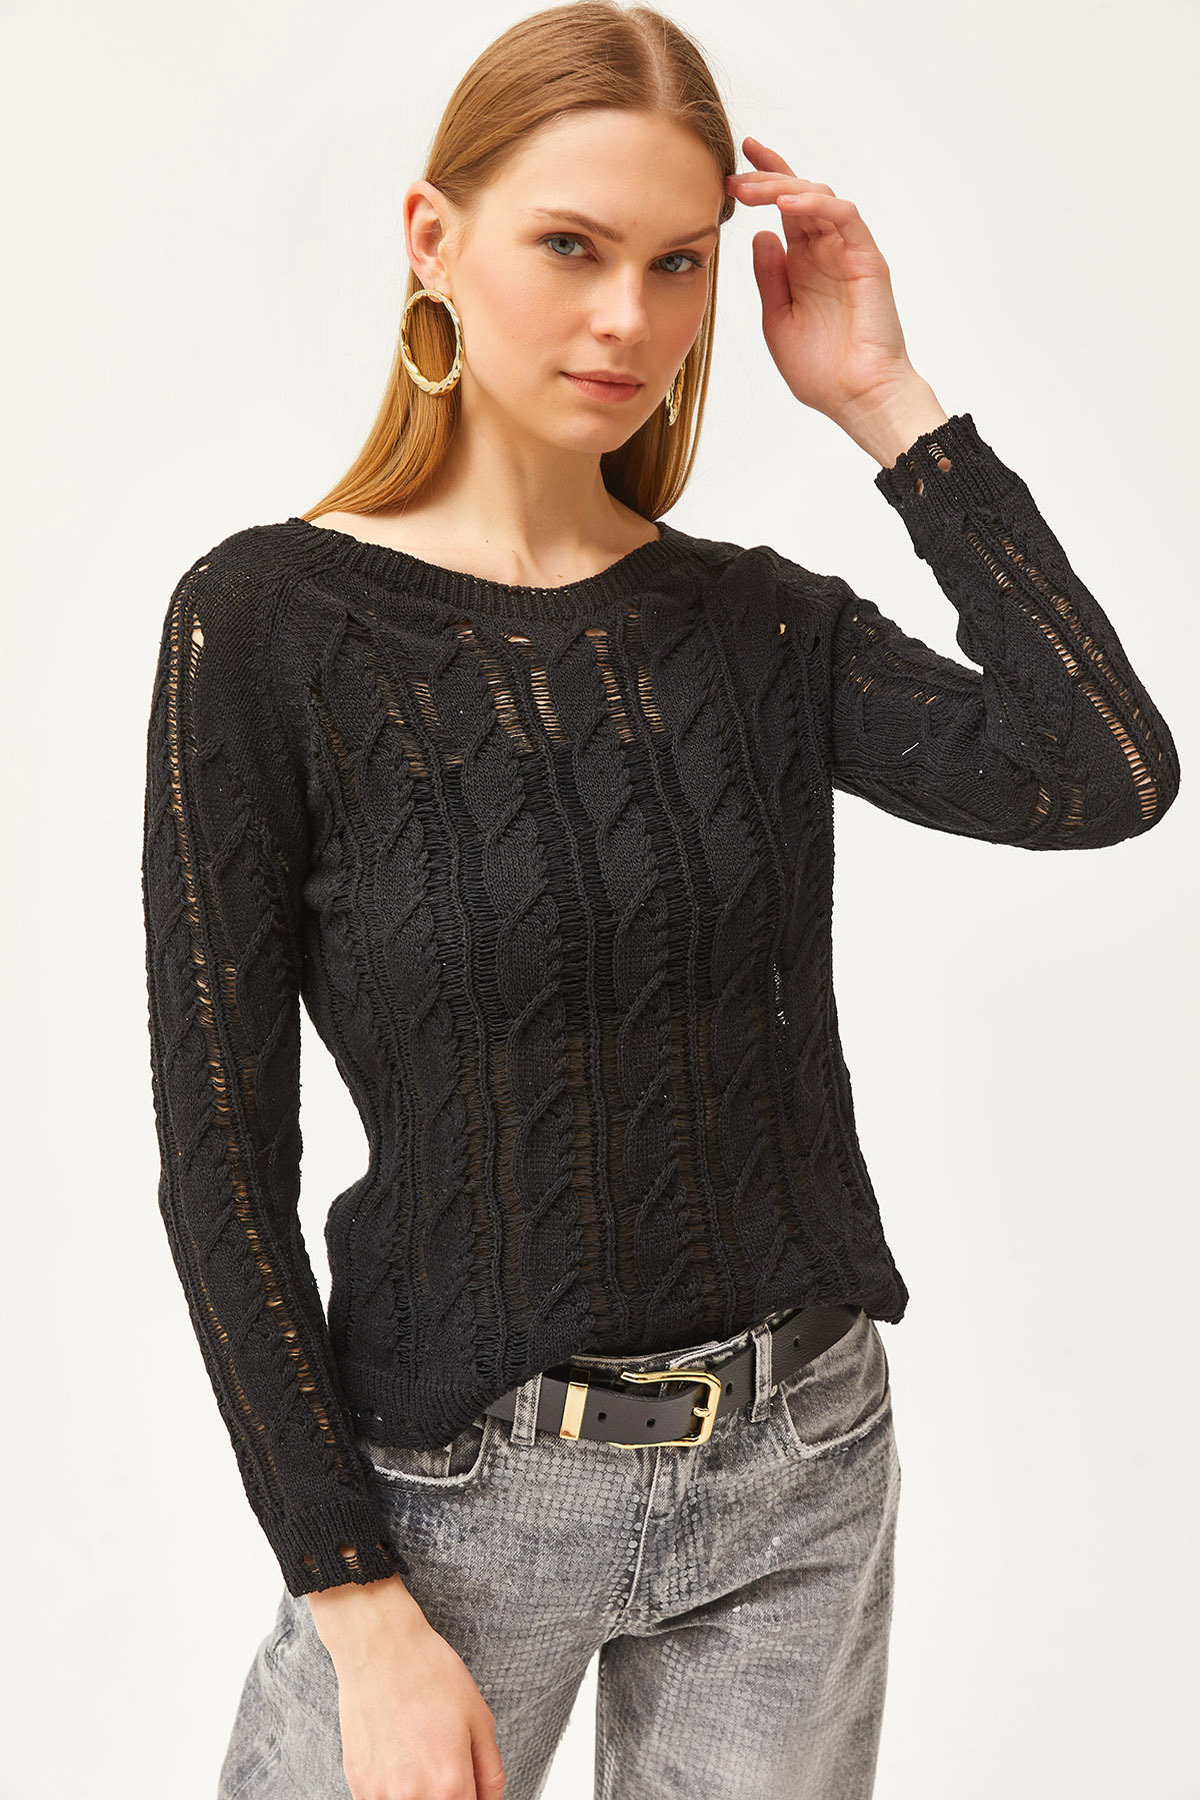 Olalook Women's Black Hair Knit Detail Seasonal Knitwear Blouse